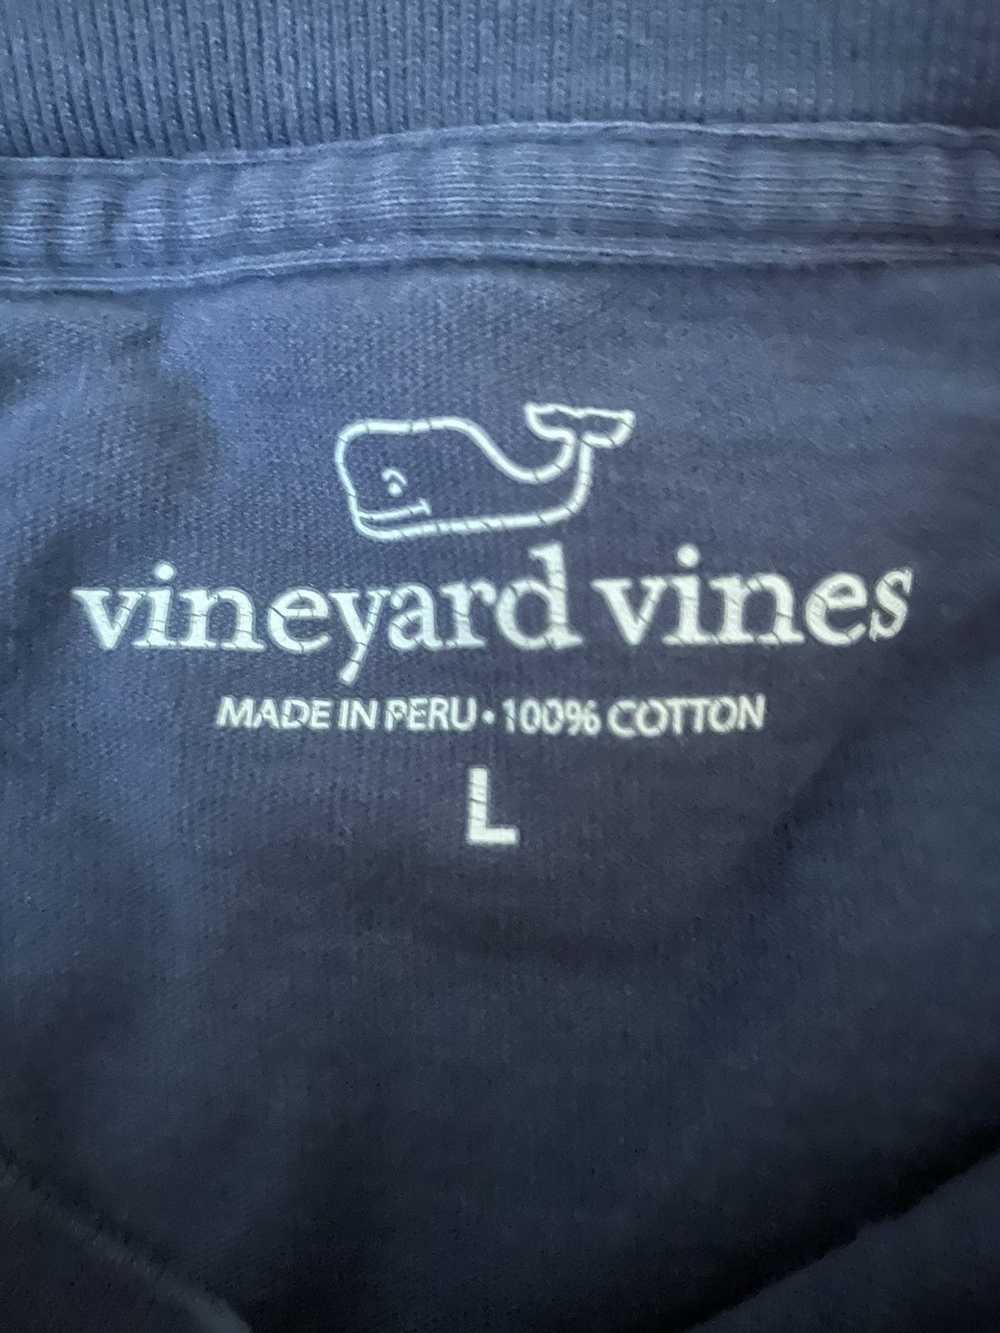 Vineyard Vines Vineyard Vines Longsleeve - image 3